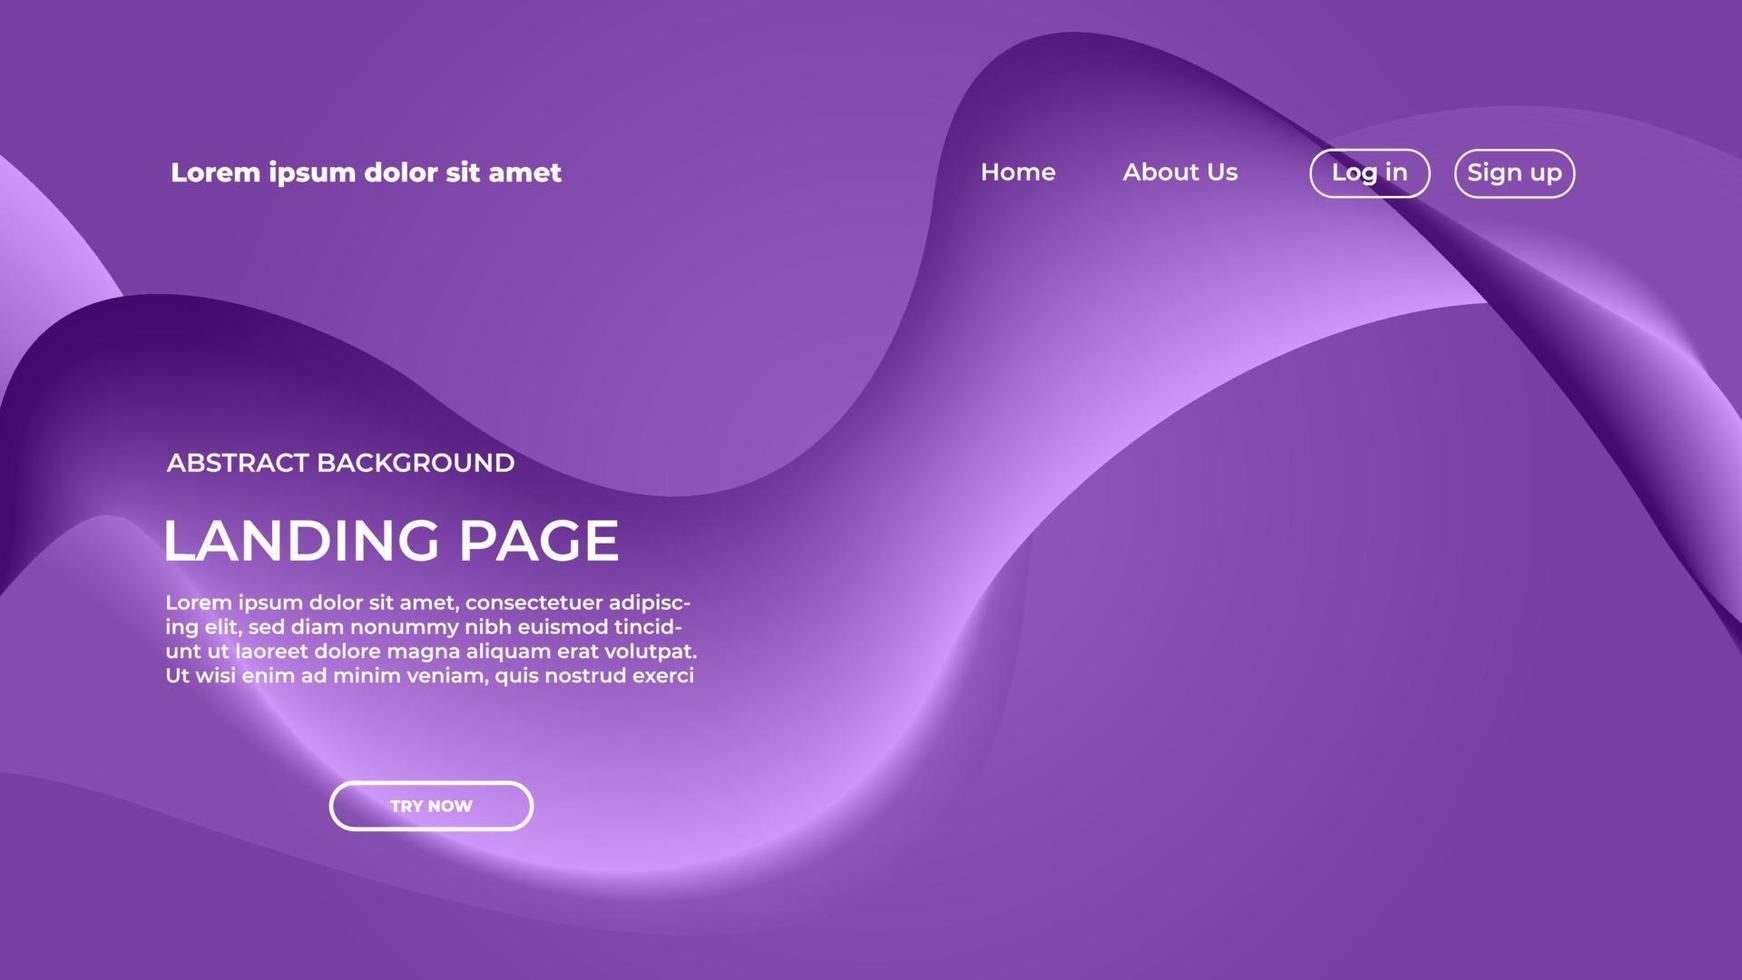 Landing Page Blue Wave Background Design Template For Website Design vector